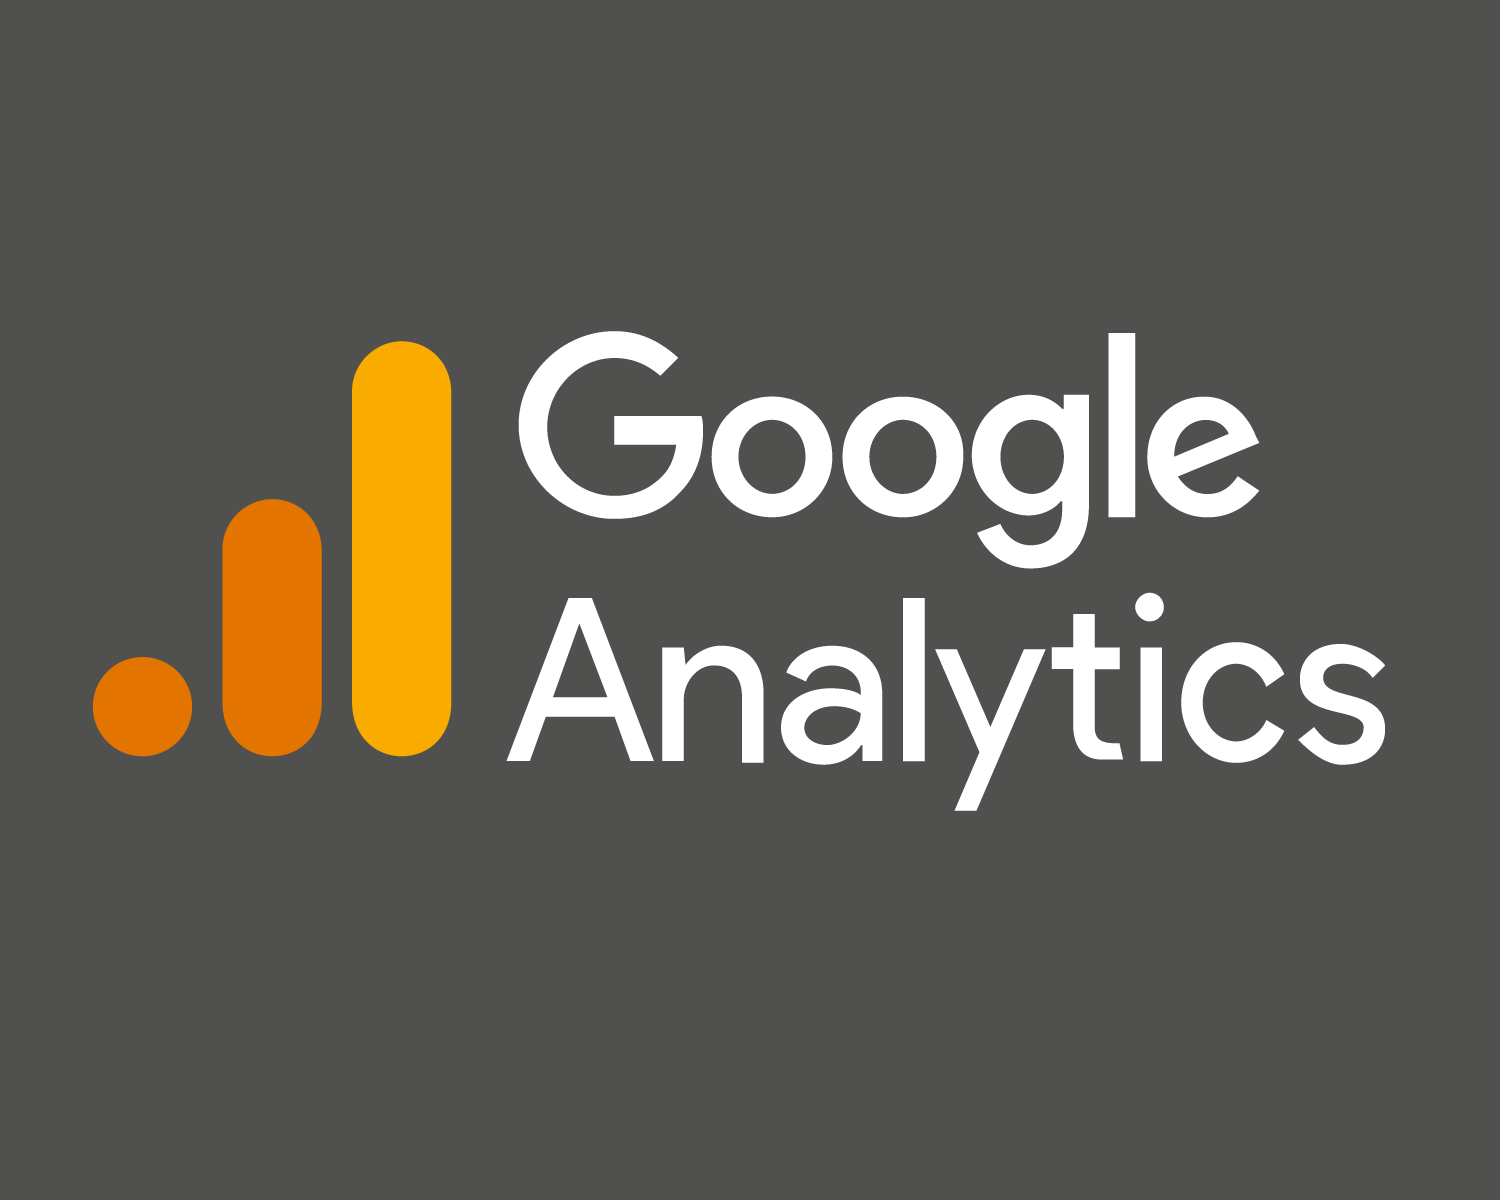 Set up and manage Google analytics